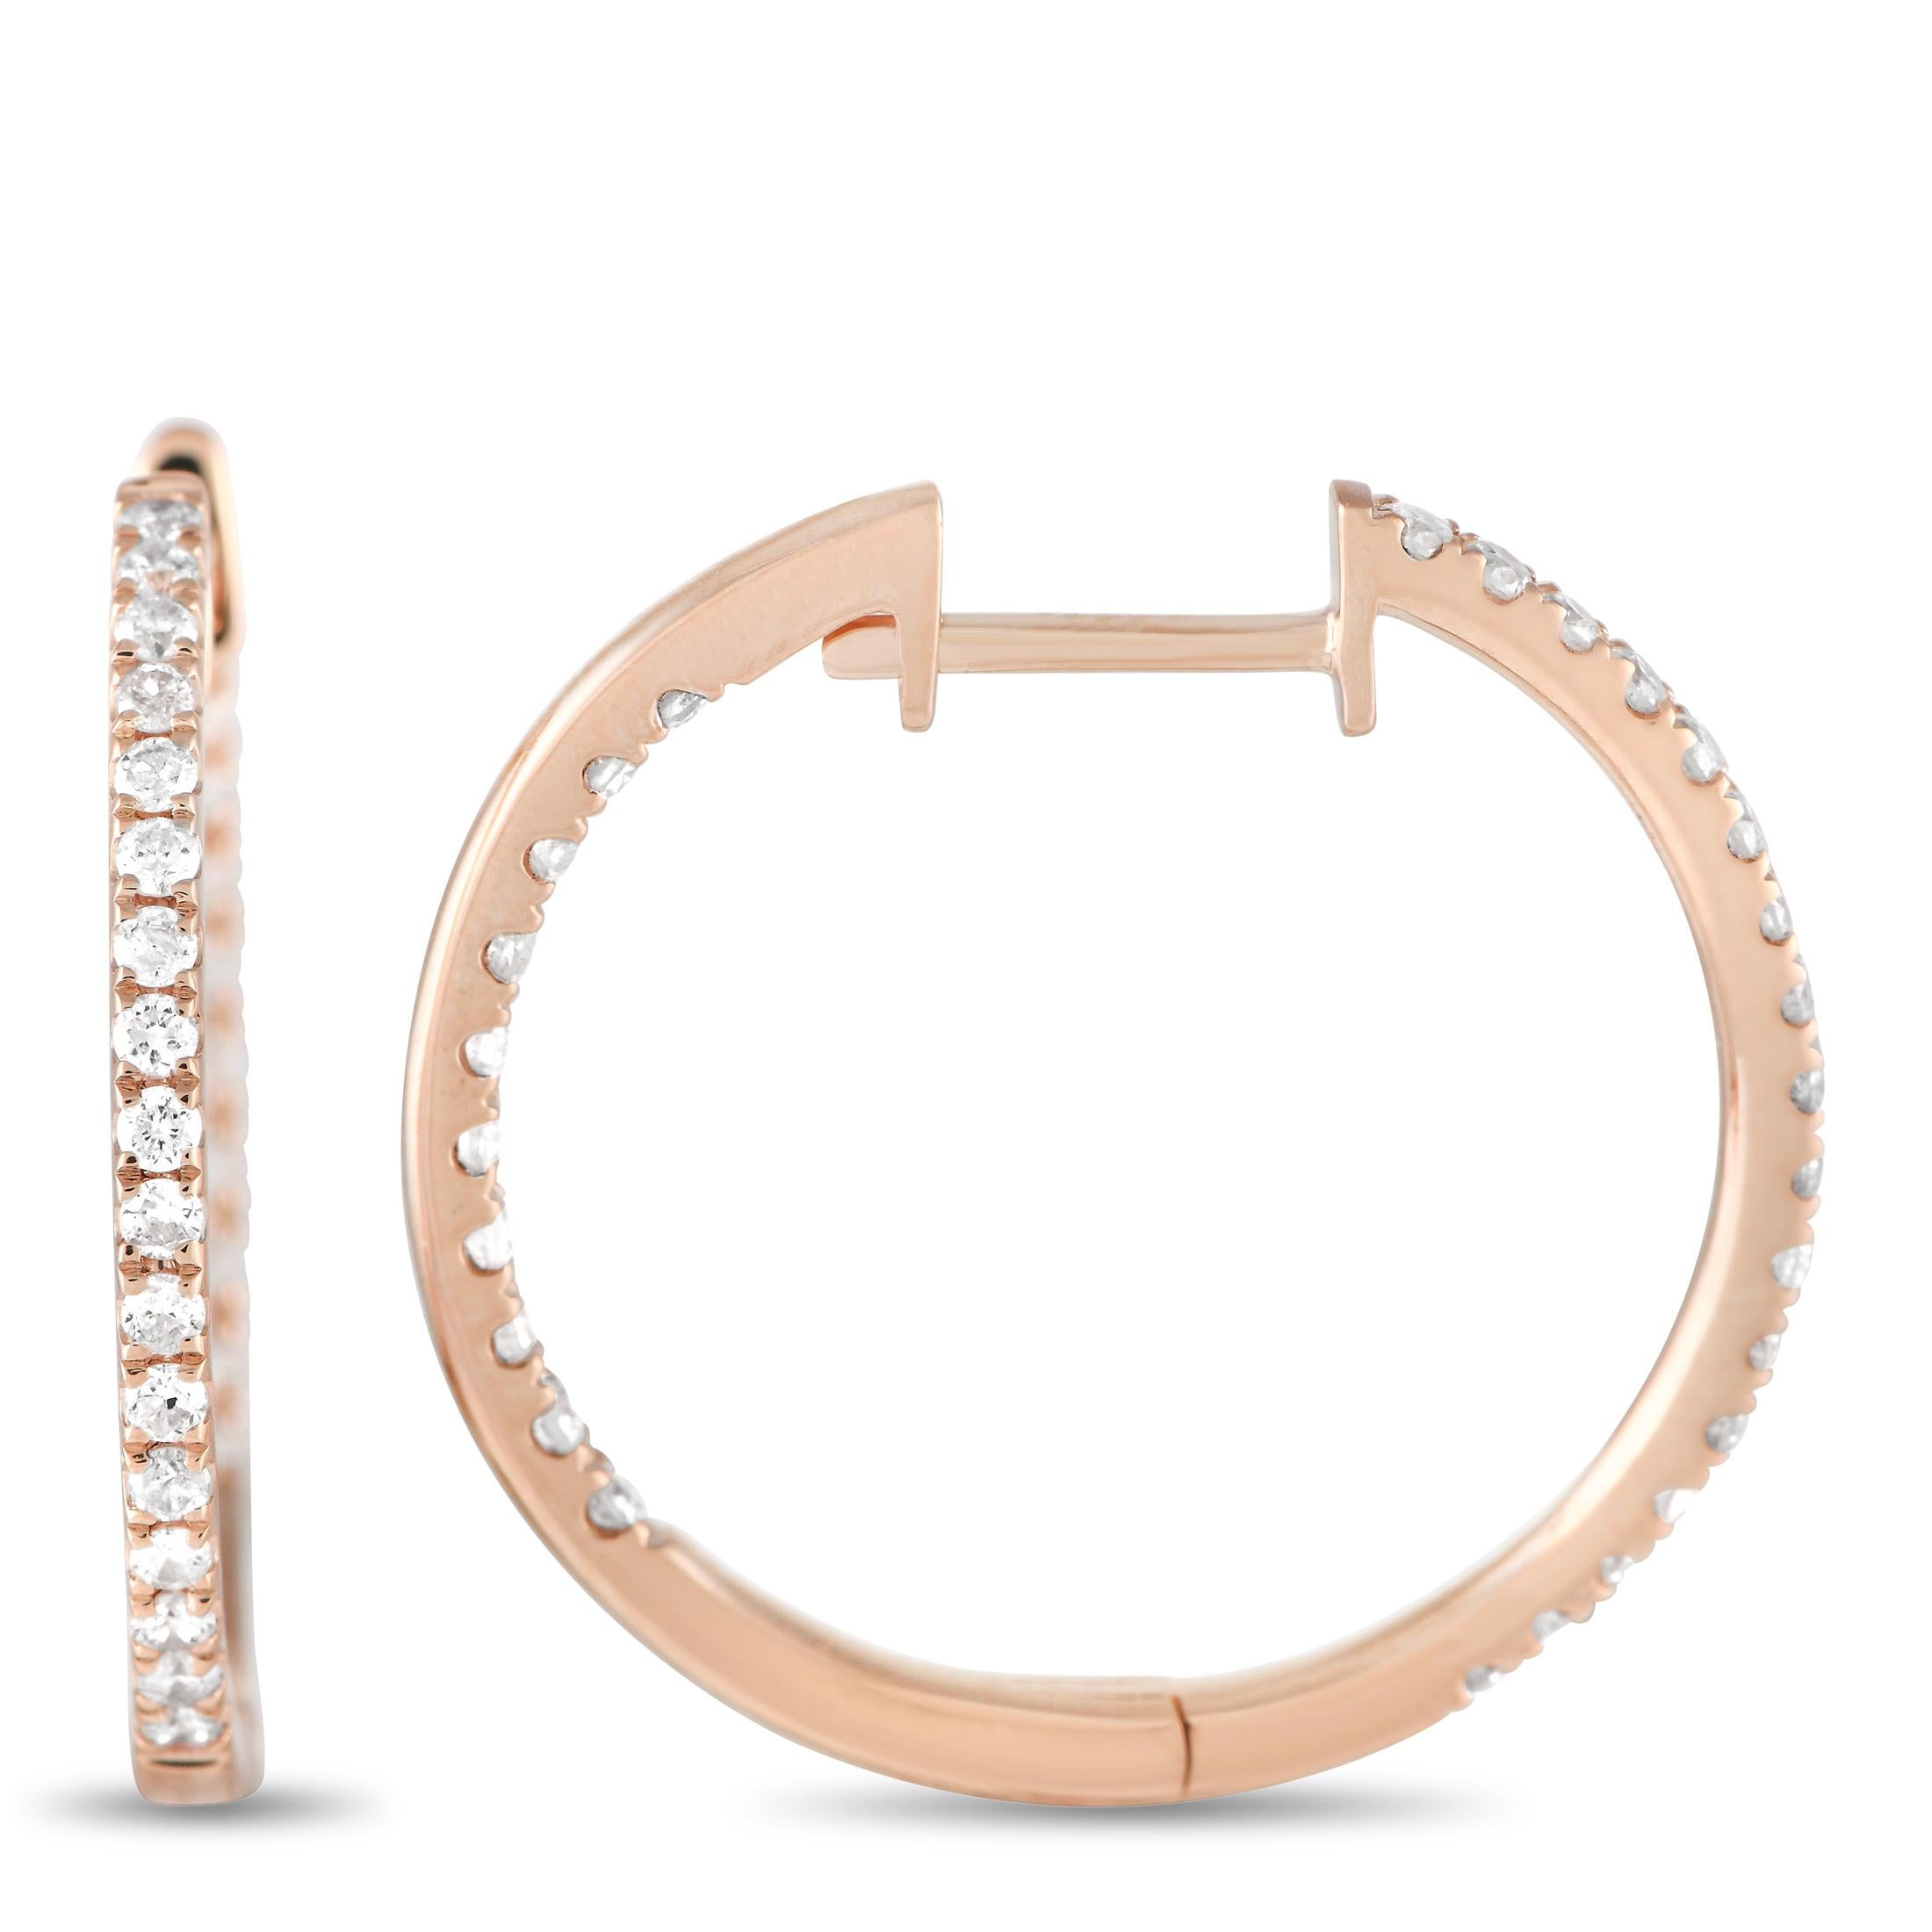 Diese schillernden Reif-Ohrringe verleihen jedem Ensemble den perfekten Schliff. Diamanten mit einem Gesamtgewicht von 0,50 Karat funkeln auf fast jedem Zentimeter dieser eleganten Ohrringe. Jedes Stück ist in 14-karätigem Roségold gefasst und misst